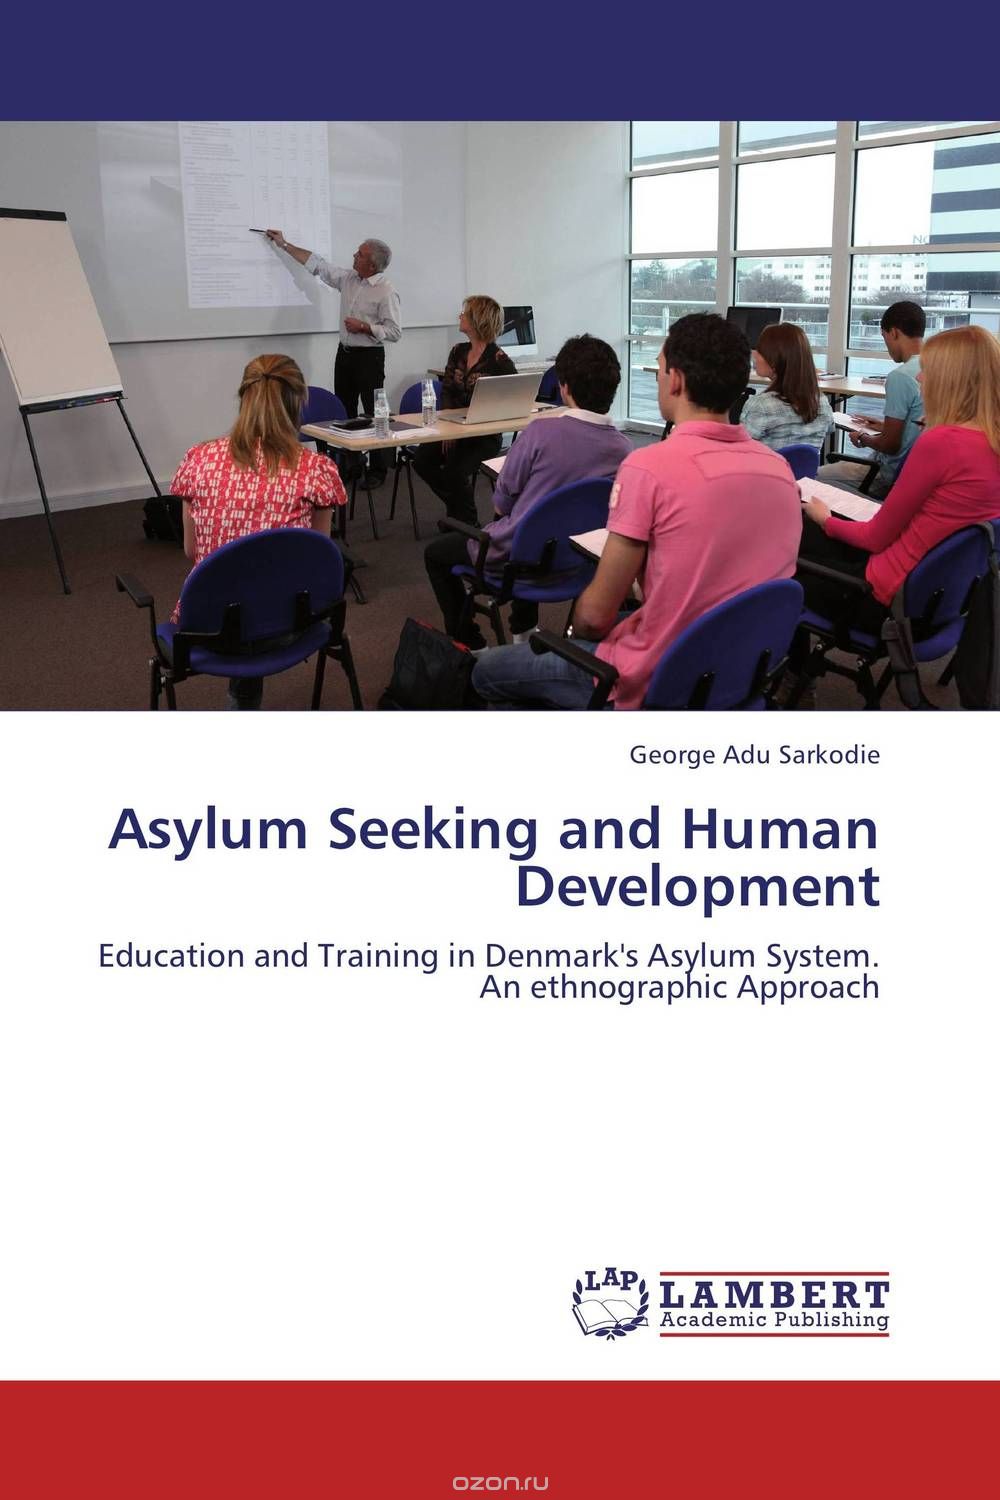 Скачать книгу "Asylum Seeking and Human Development"